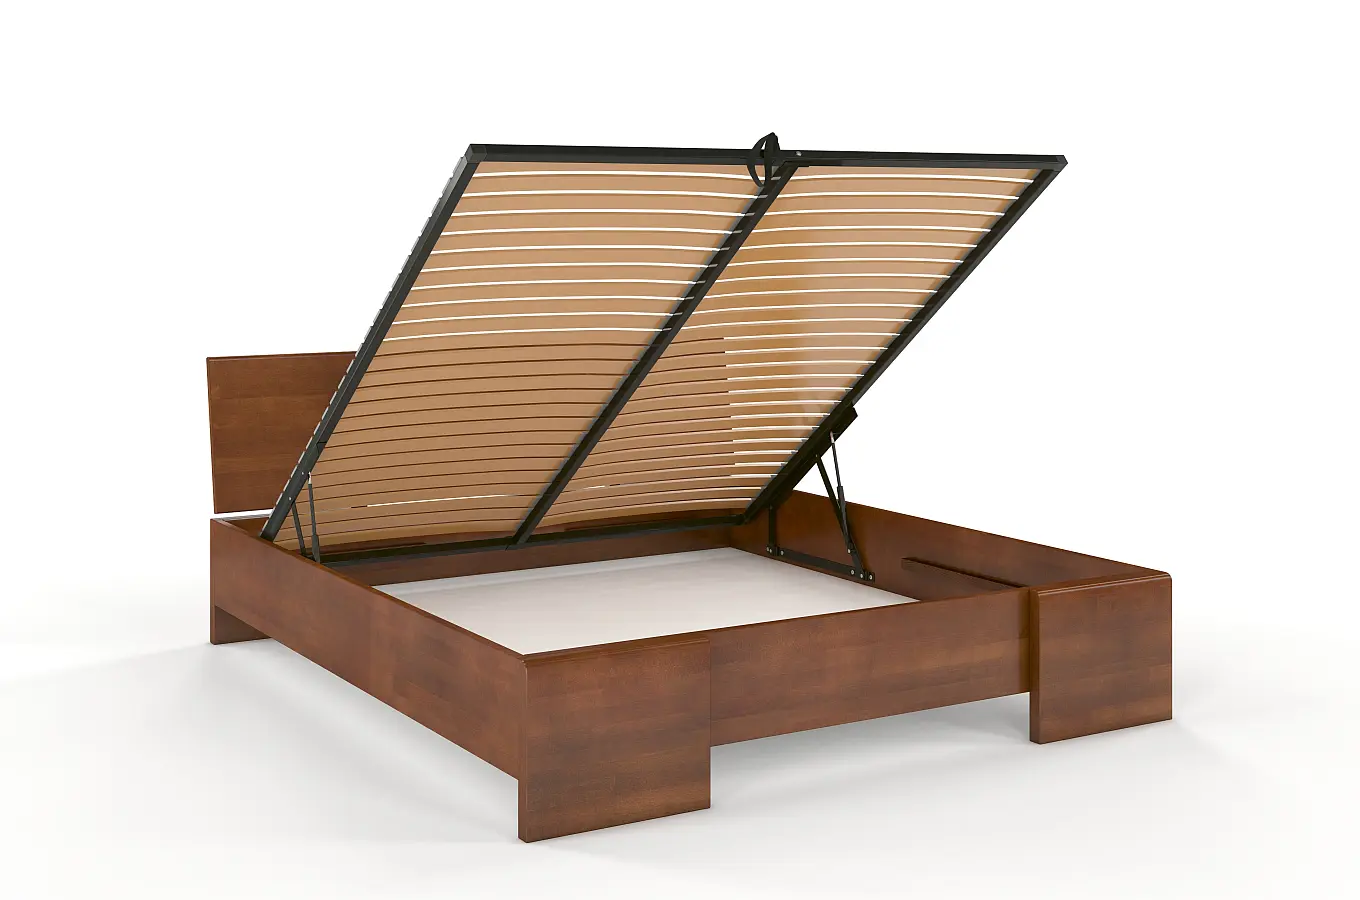 Łóżko drewniane bukowe Visby Hessler High BC (skrzynia na pościel) / 200x200 cm, kolor orzech